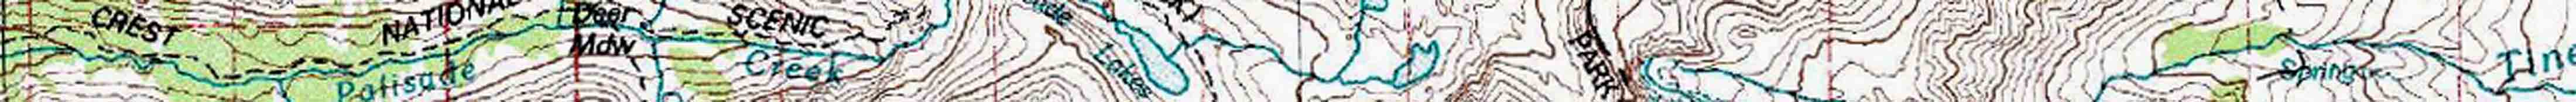 Bishop Pass to Mount Whitney Map of John Muir Trail.